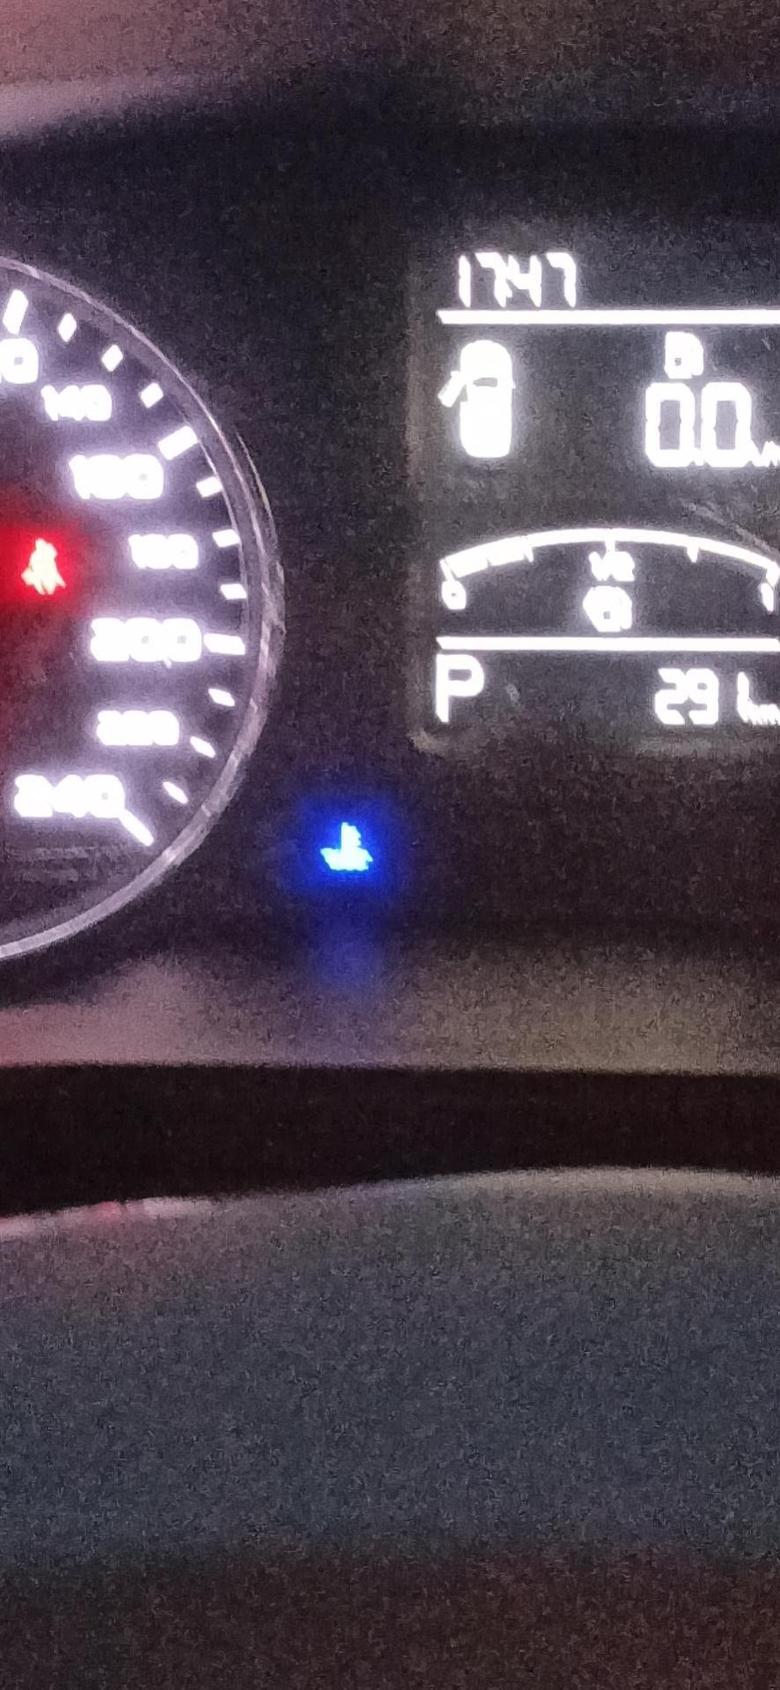 荣威rx5 麻烦问一下车友门，仪表盘上蓝色的标致是什么意思